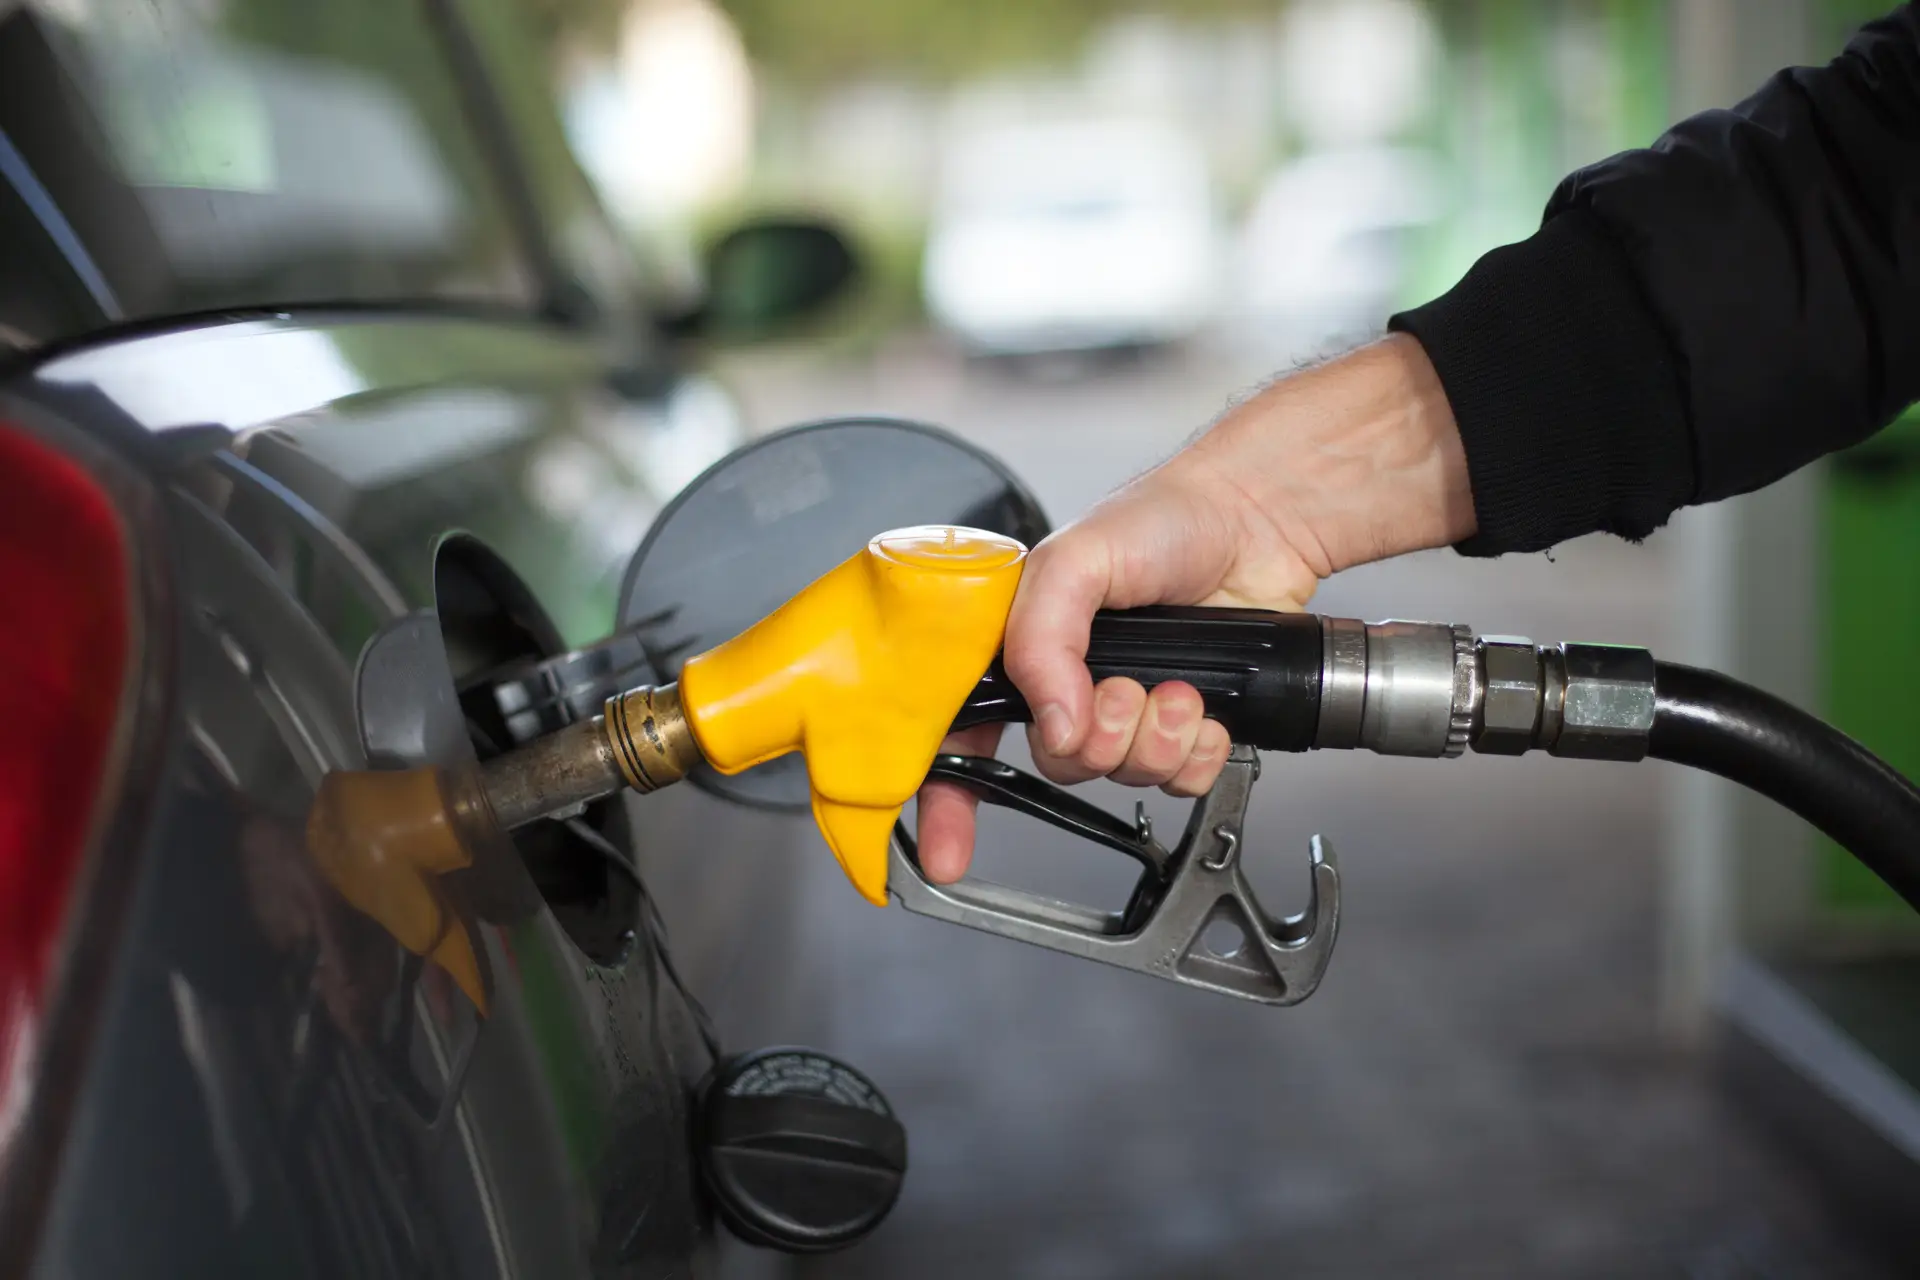 Combustíveis: Governo anuncia desconto de 10 cêntimos/litro através do IVAucher